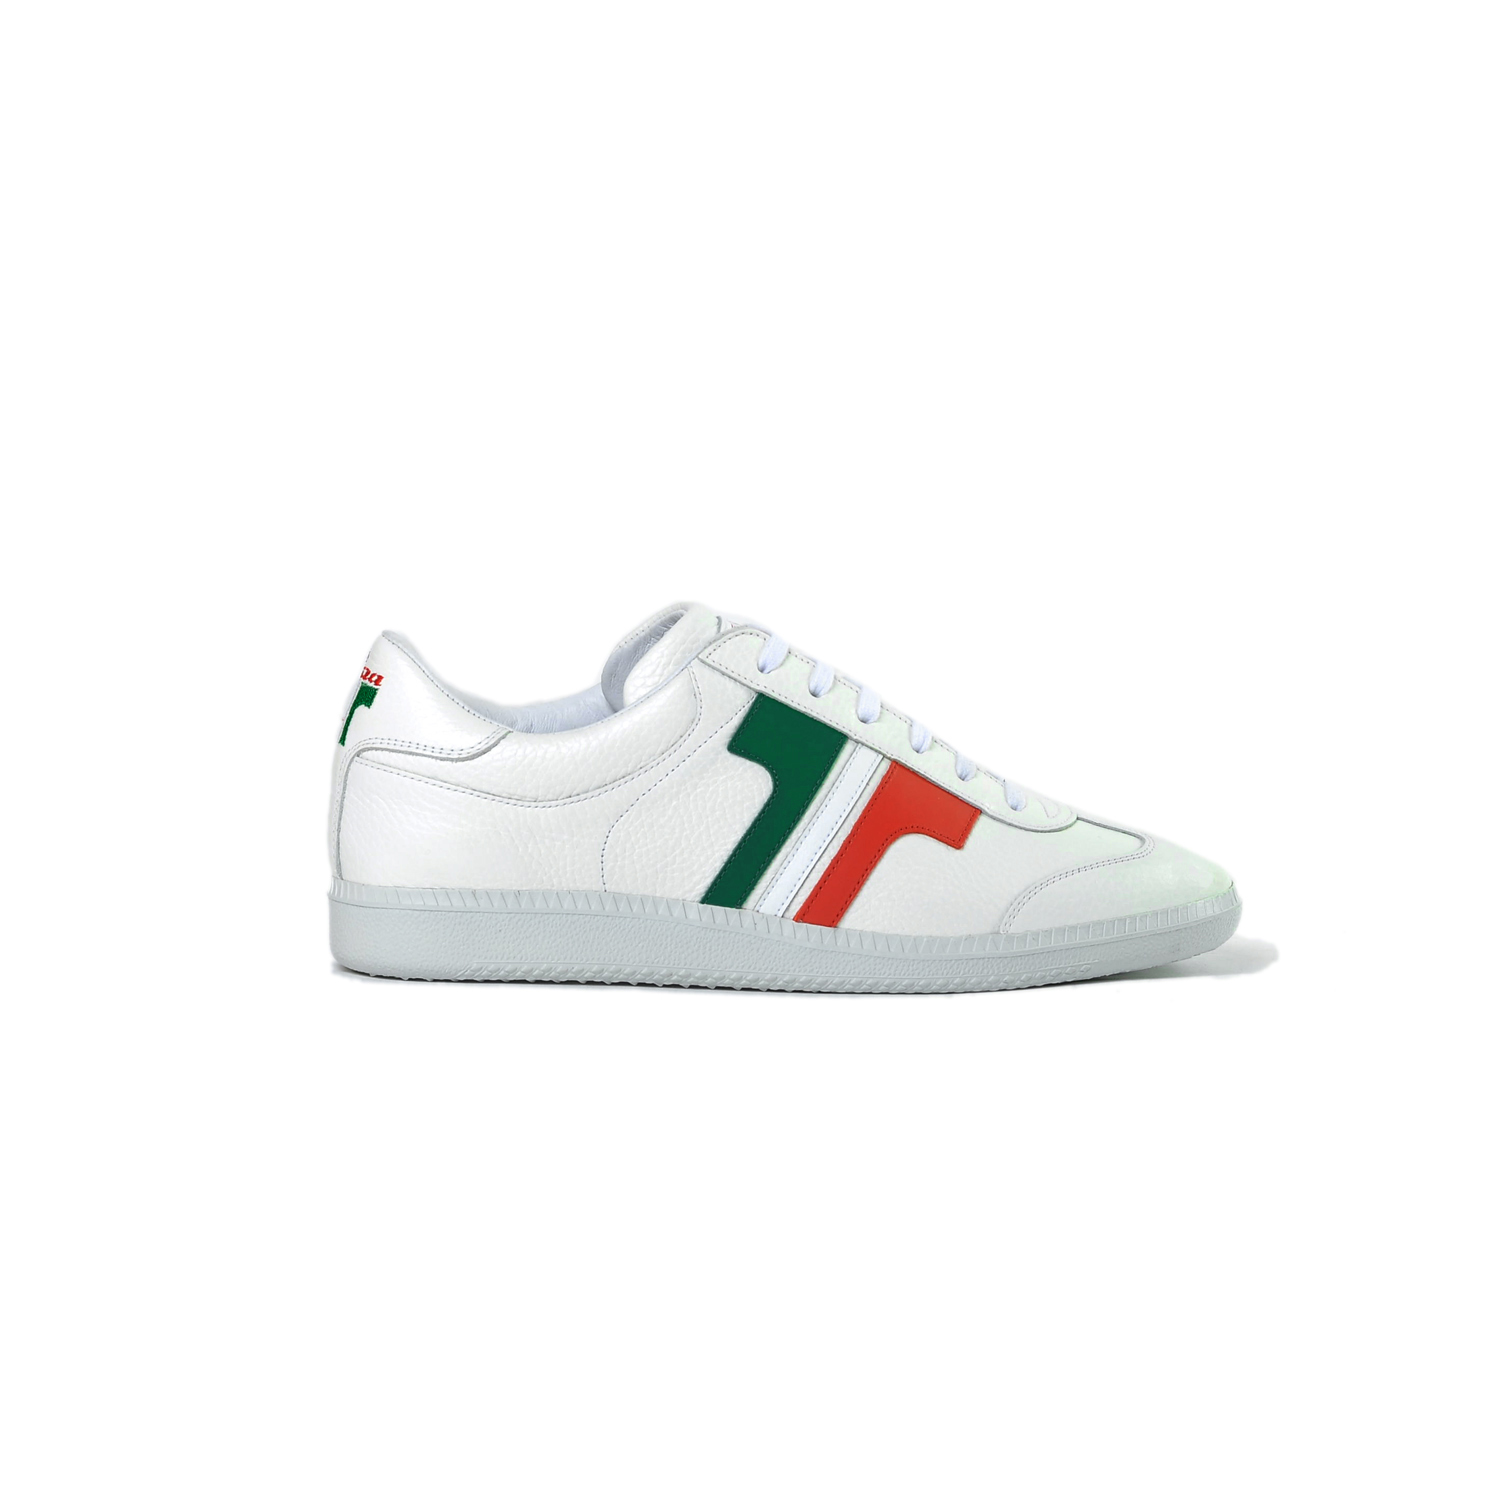 Tisza shoes - Compakt - White-tricolor